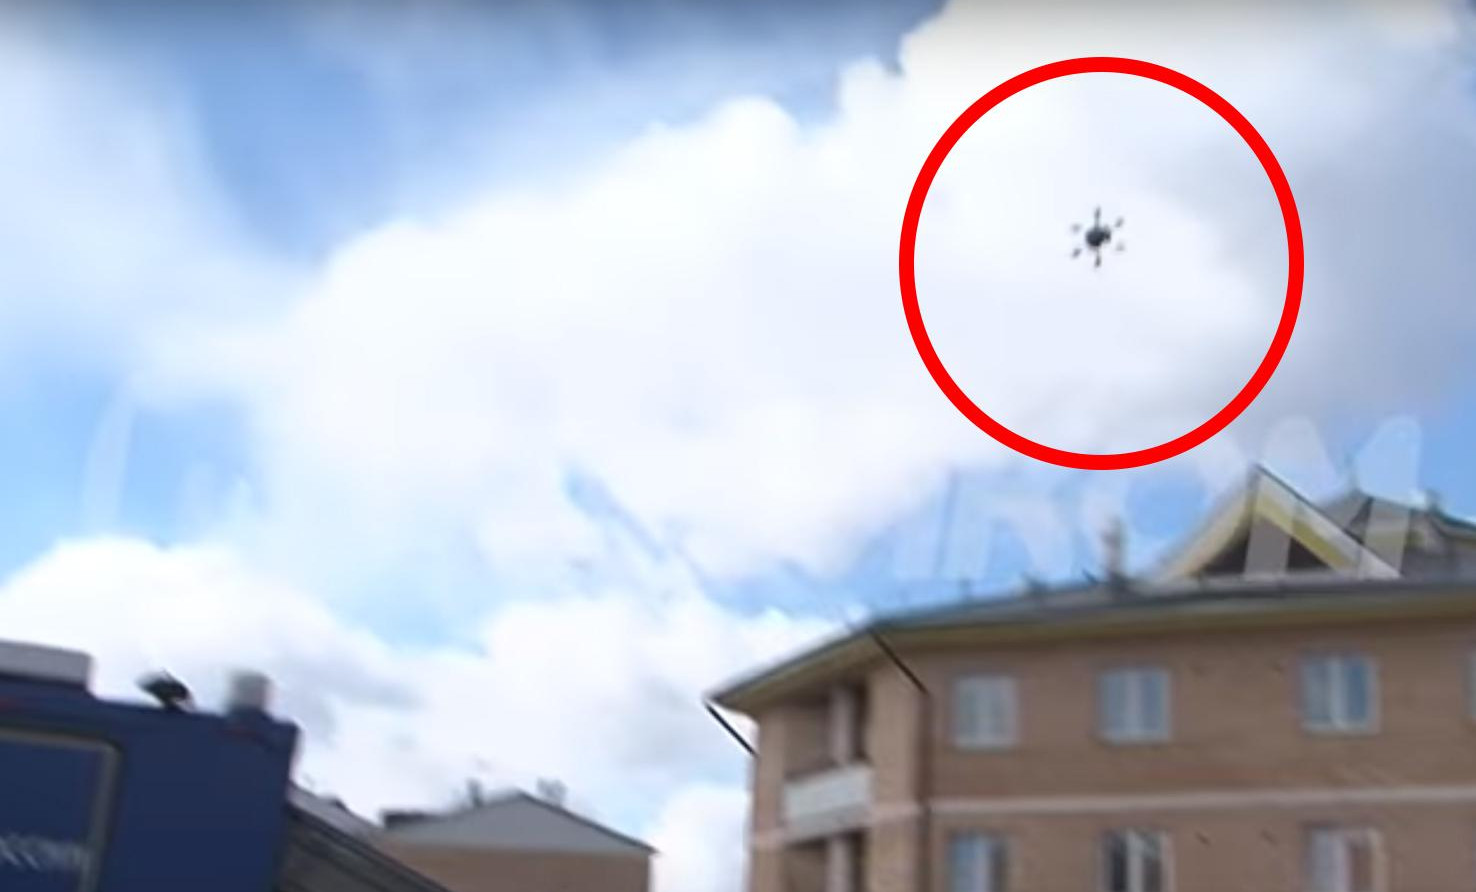 (VIDEO) KAKVA BLAMČINA! Pošta Rusije poslala dron da odnese paket, ali onda se DESIO POTPUNI FIJASKO!